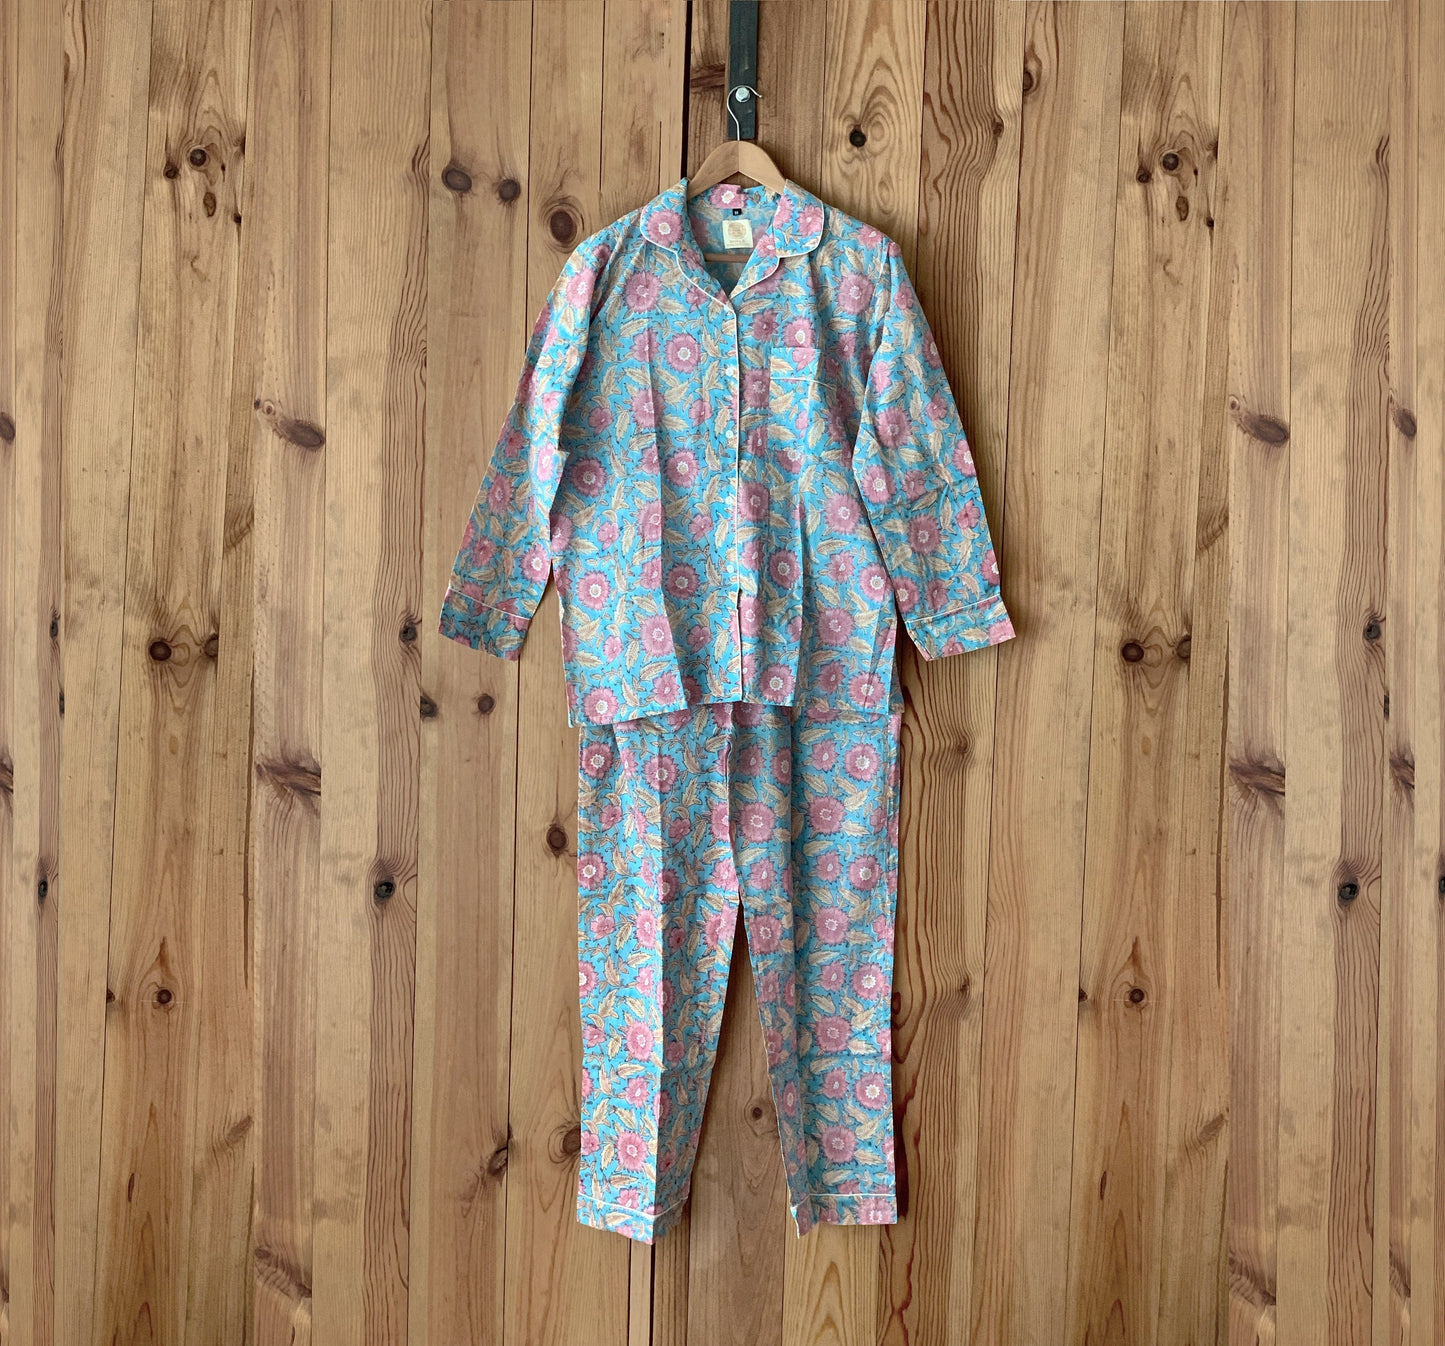 Pijama manga y pantalón largos · Algodón puro estampado block print artesanal en India · Pijama invierno algodón 100% · Turquesa flores rosa